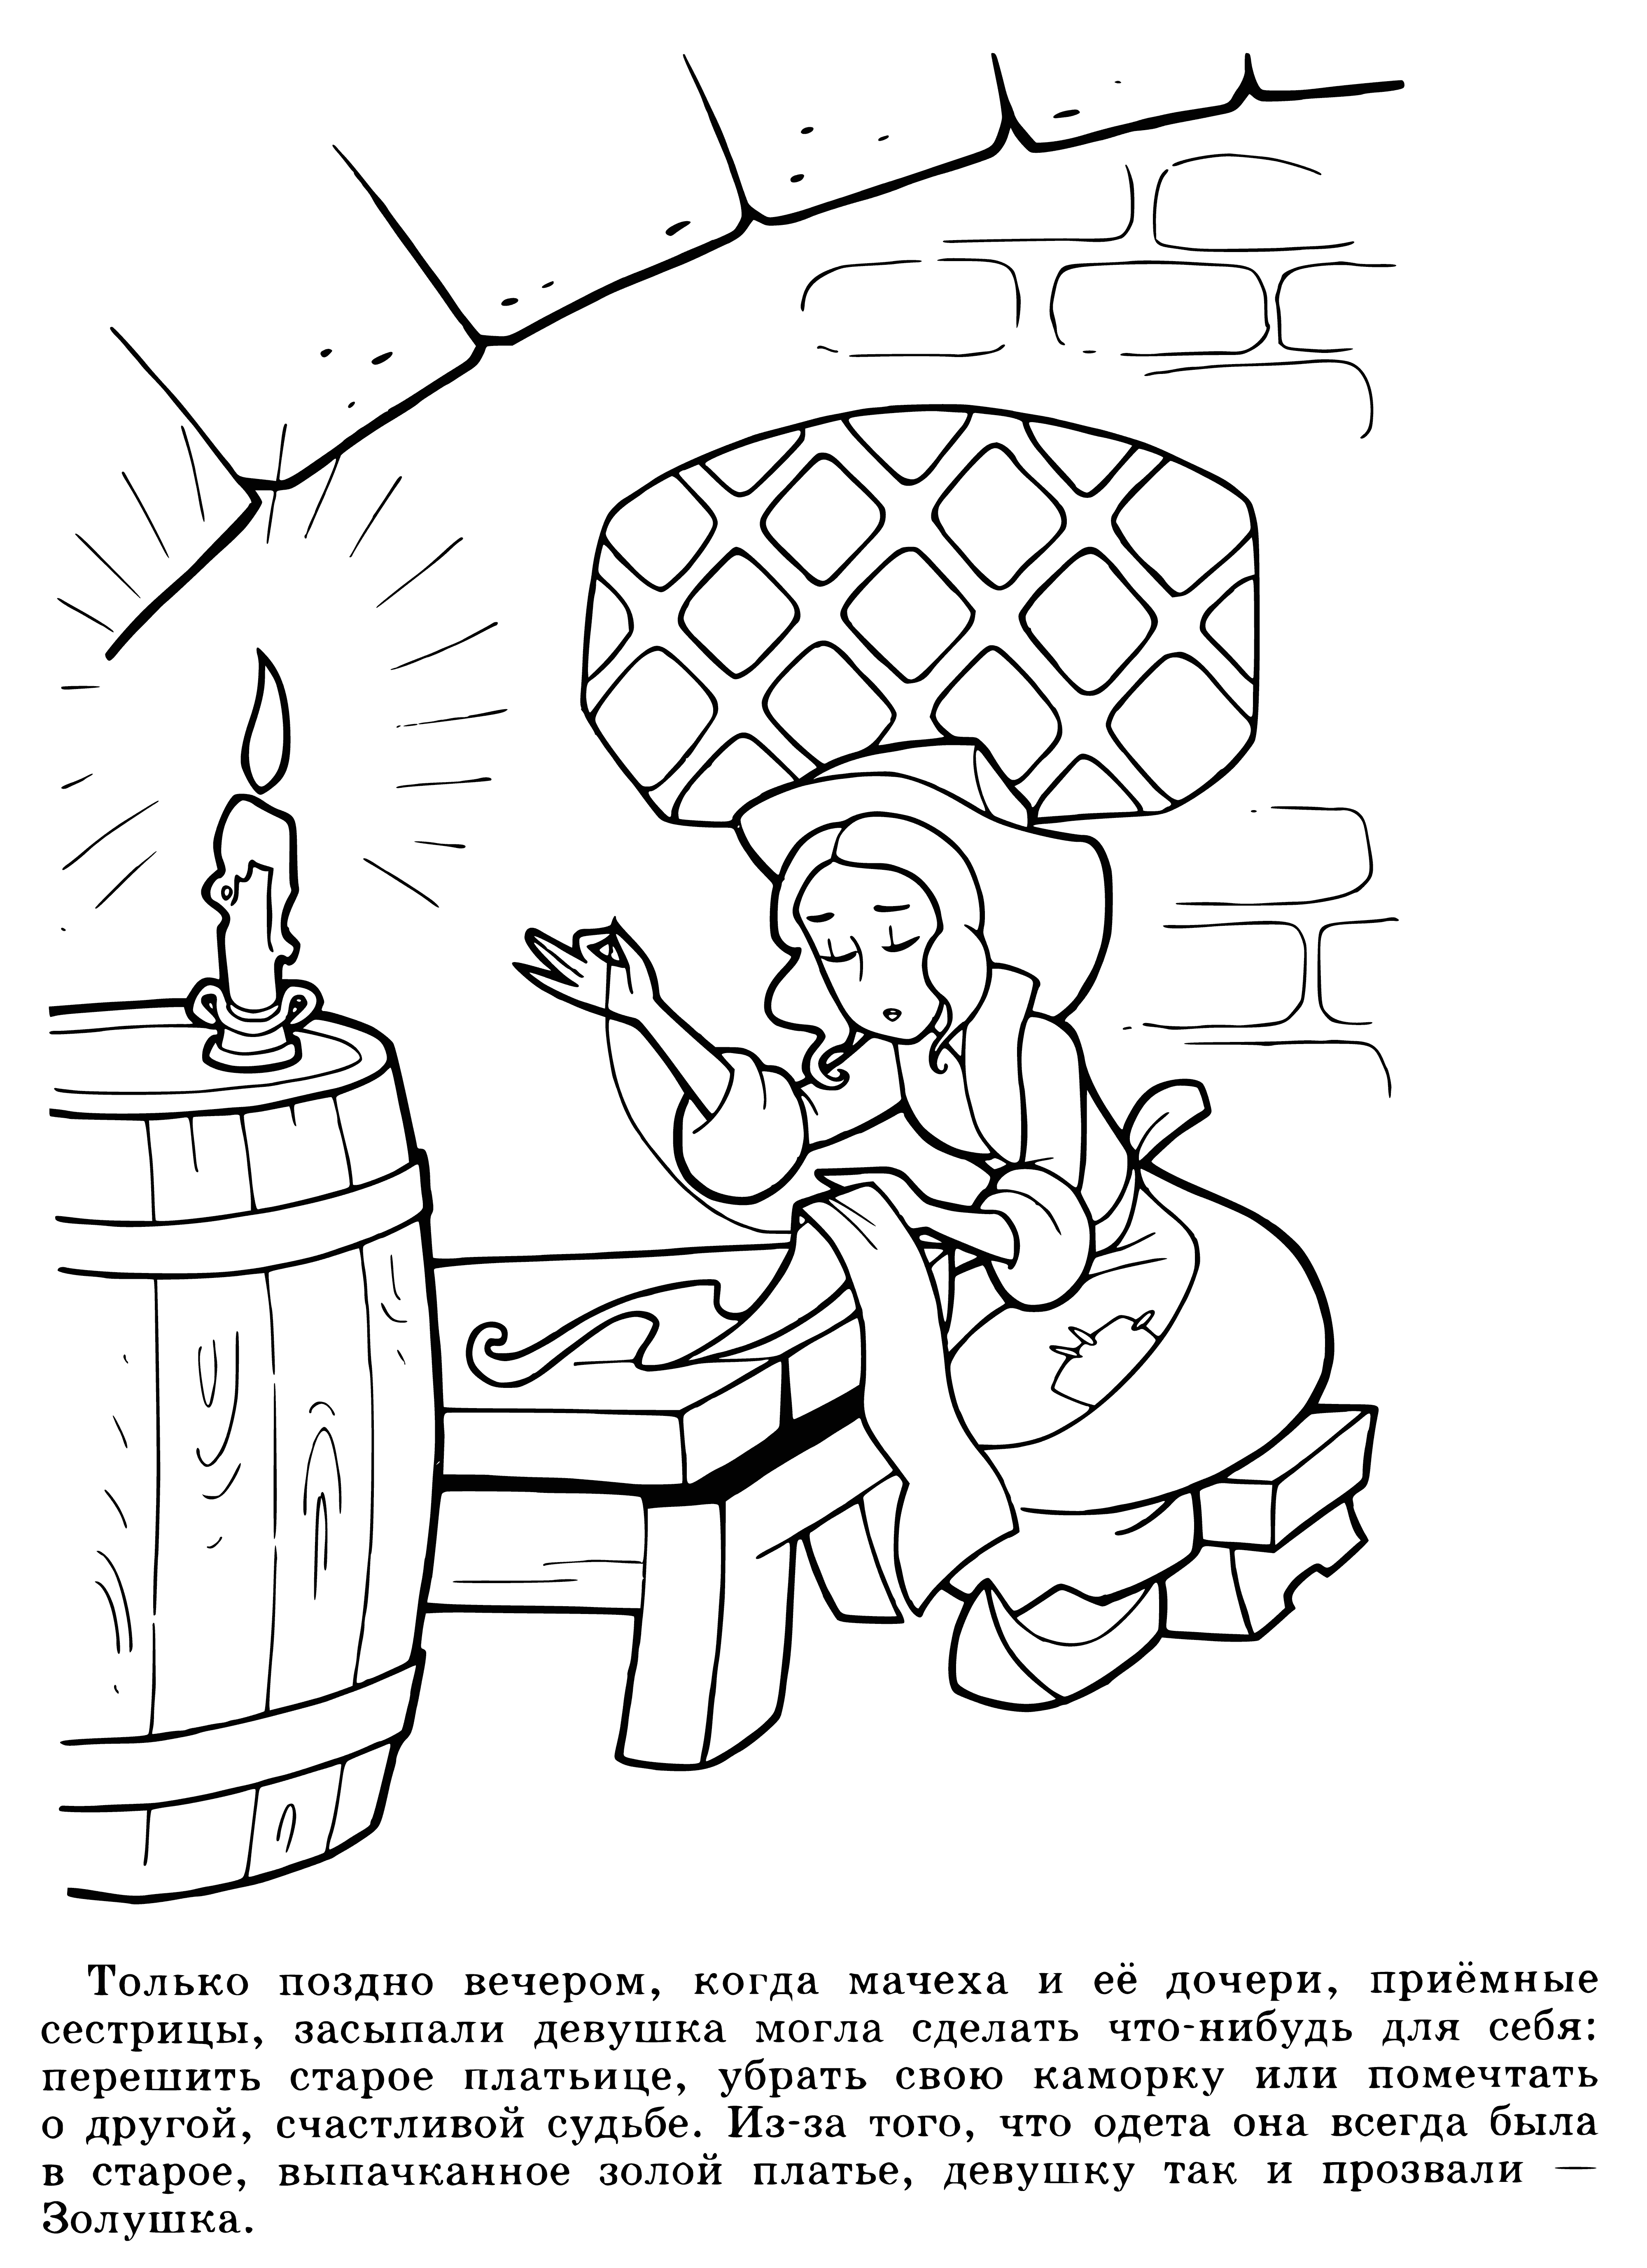 Poor Cinderella coloring page